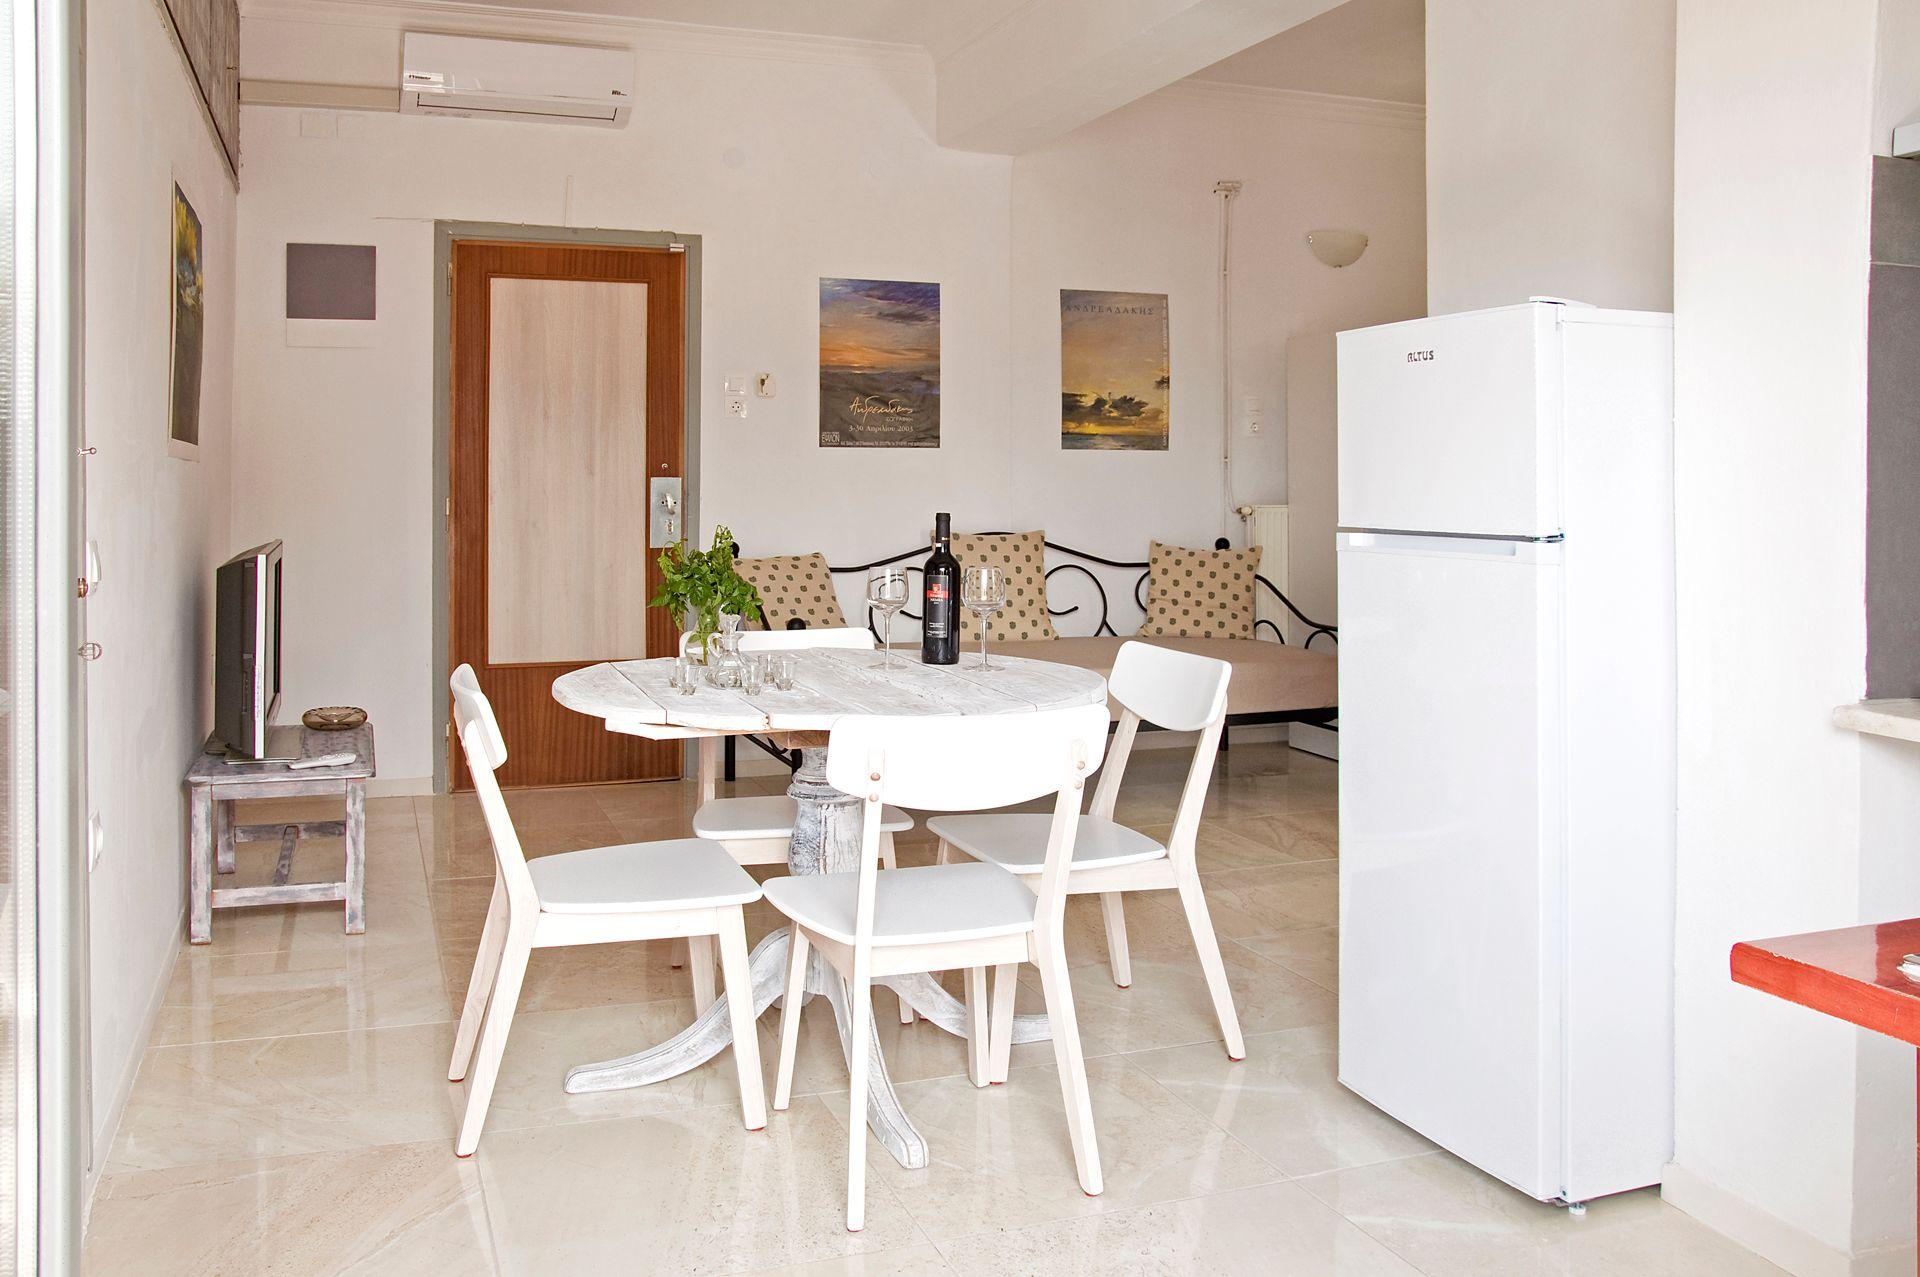 Ferienwohnung für 4 Personen ca. 48 m² i Ferienwohnung in Griechenland